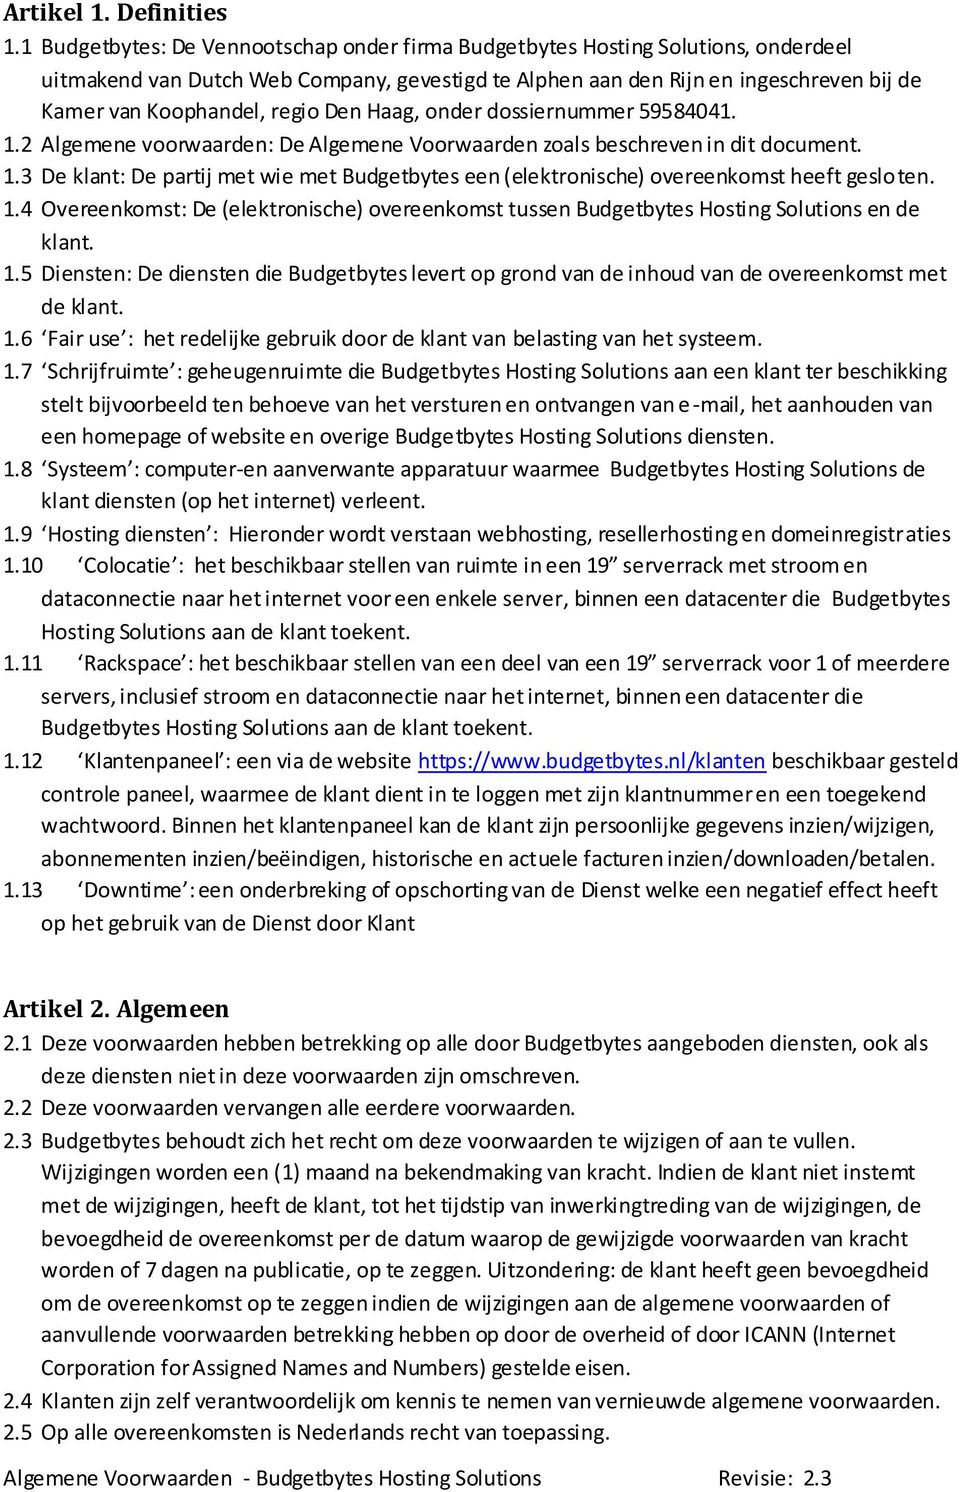 regio Den Haag, onder dossiernummer 59584041. 1.2 Algemene voorwaarden: De Algemene Voorwaarden zoals beschreven in dit document. 1.3 De klant: De partij met wie met Budgetbytes een (elektronische) overeenkomst heeft gesloten.